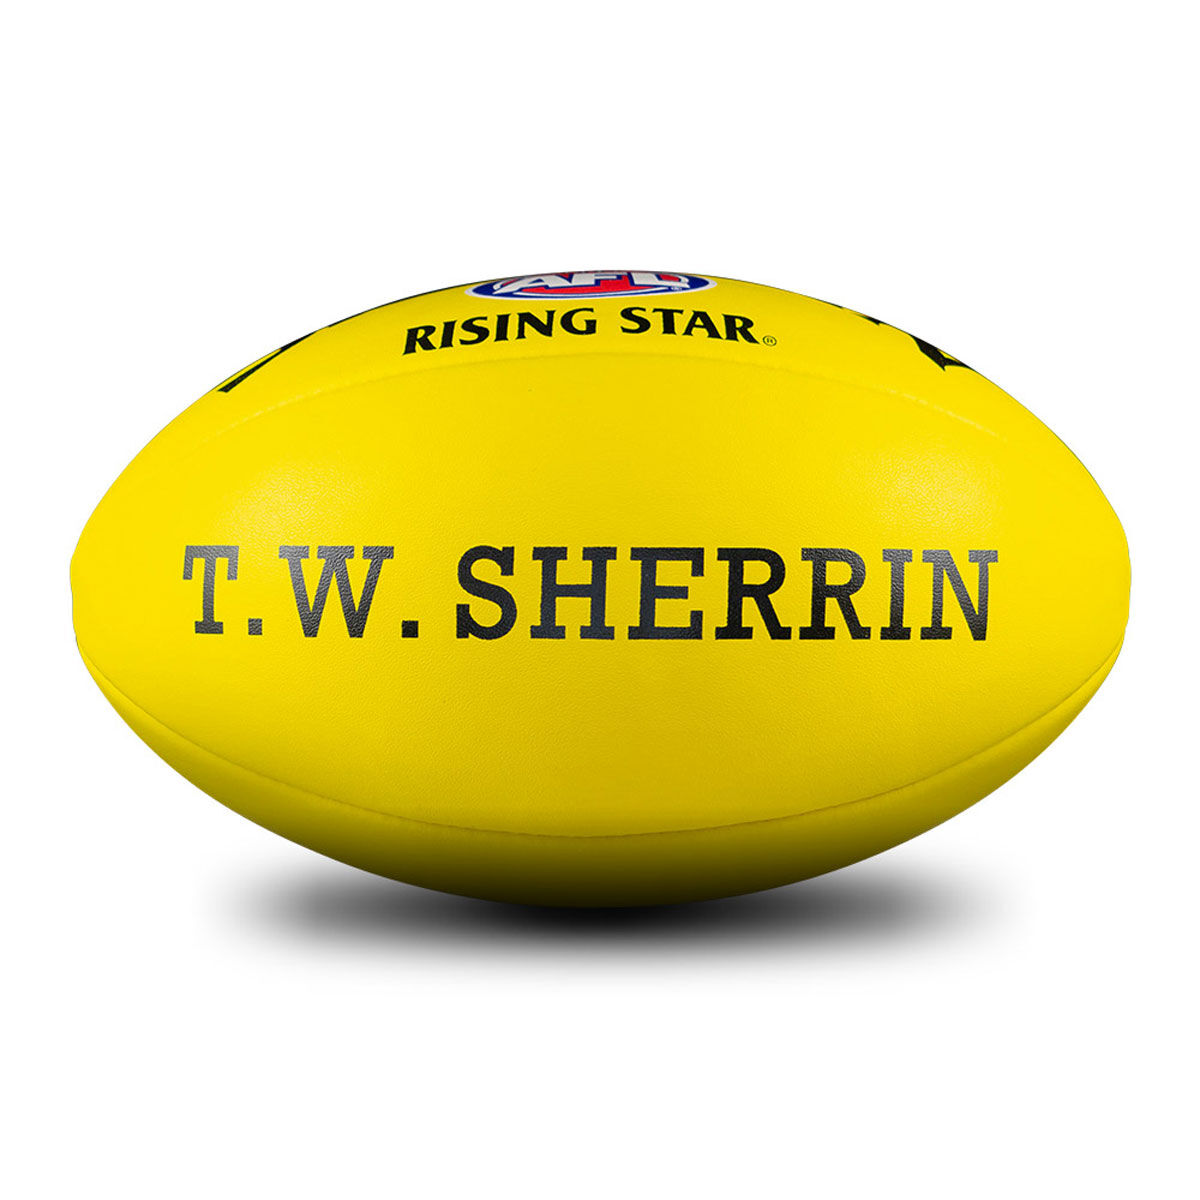 AFL Footballs, Shop Official & Team AFL Balls